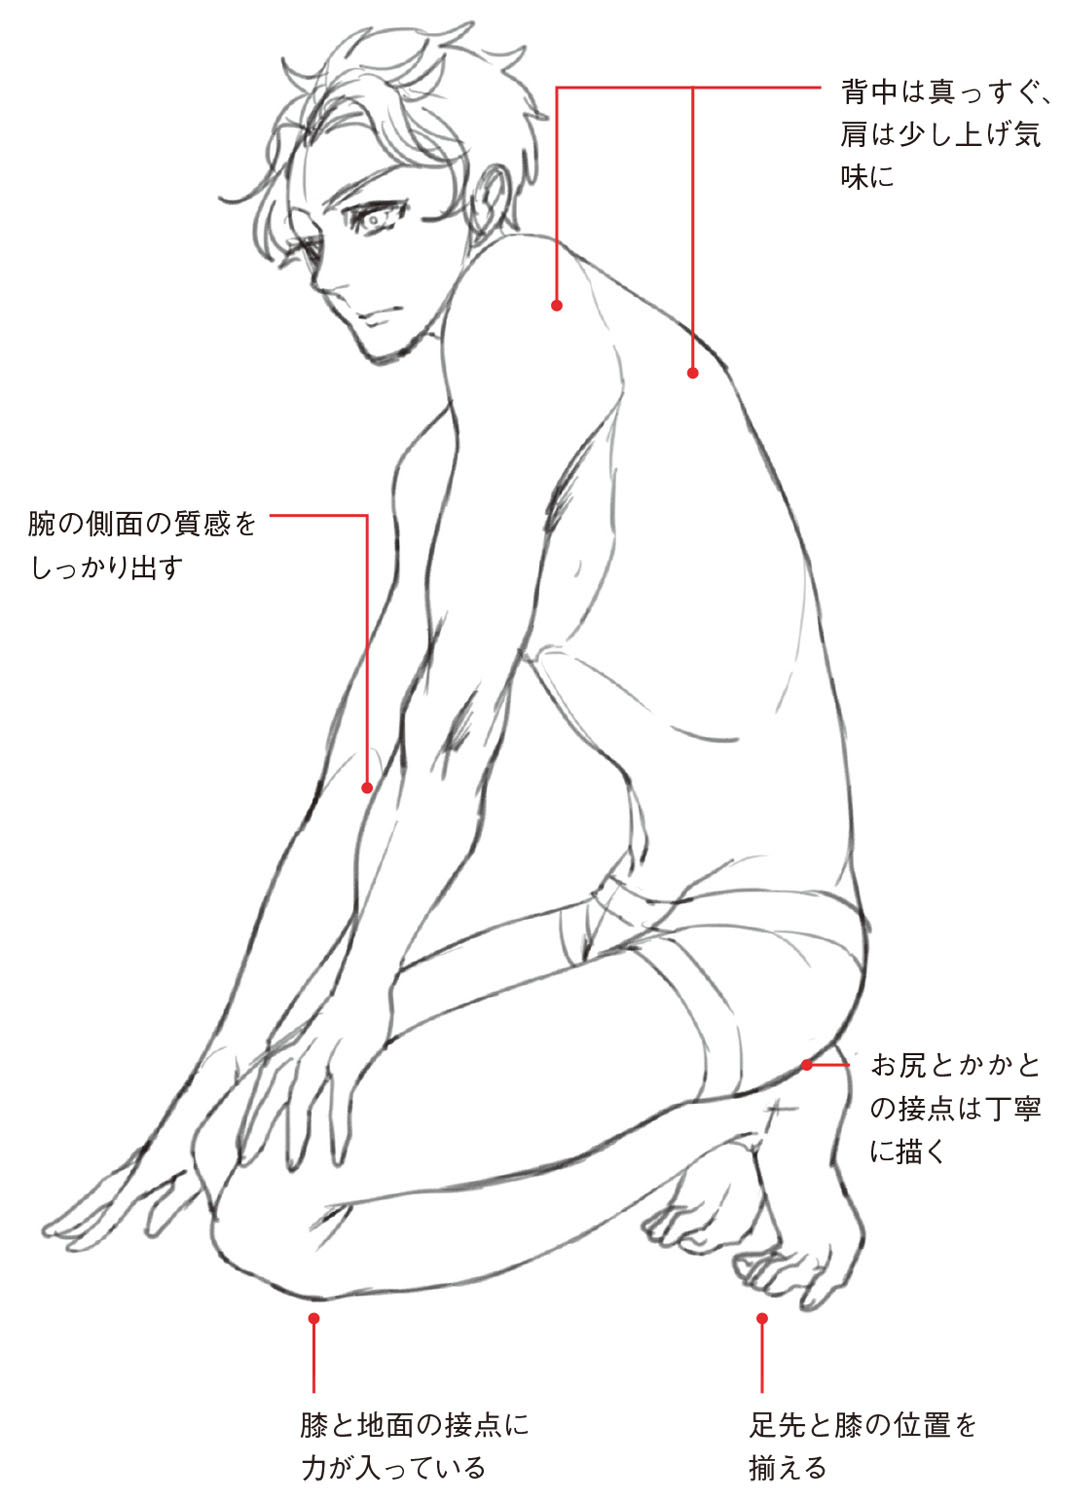 男性キャラのポージングのコツ 床に座る ポーズは 股関節と膝関節